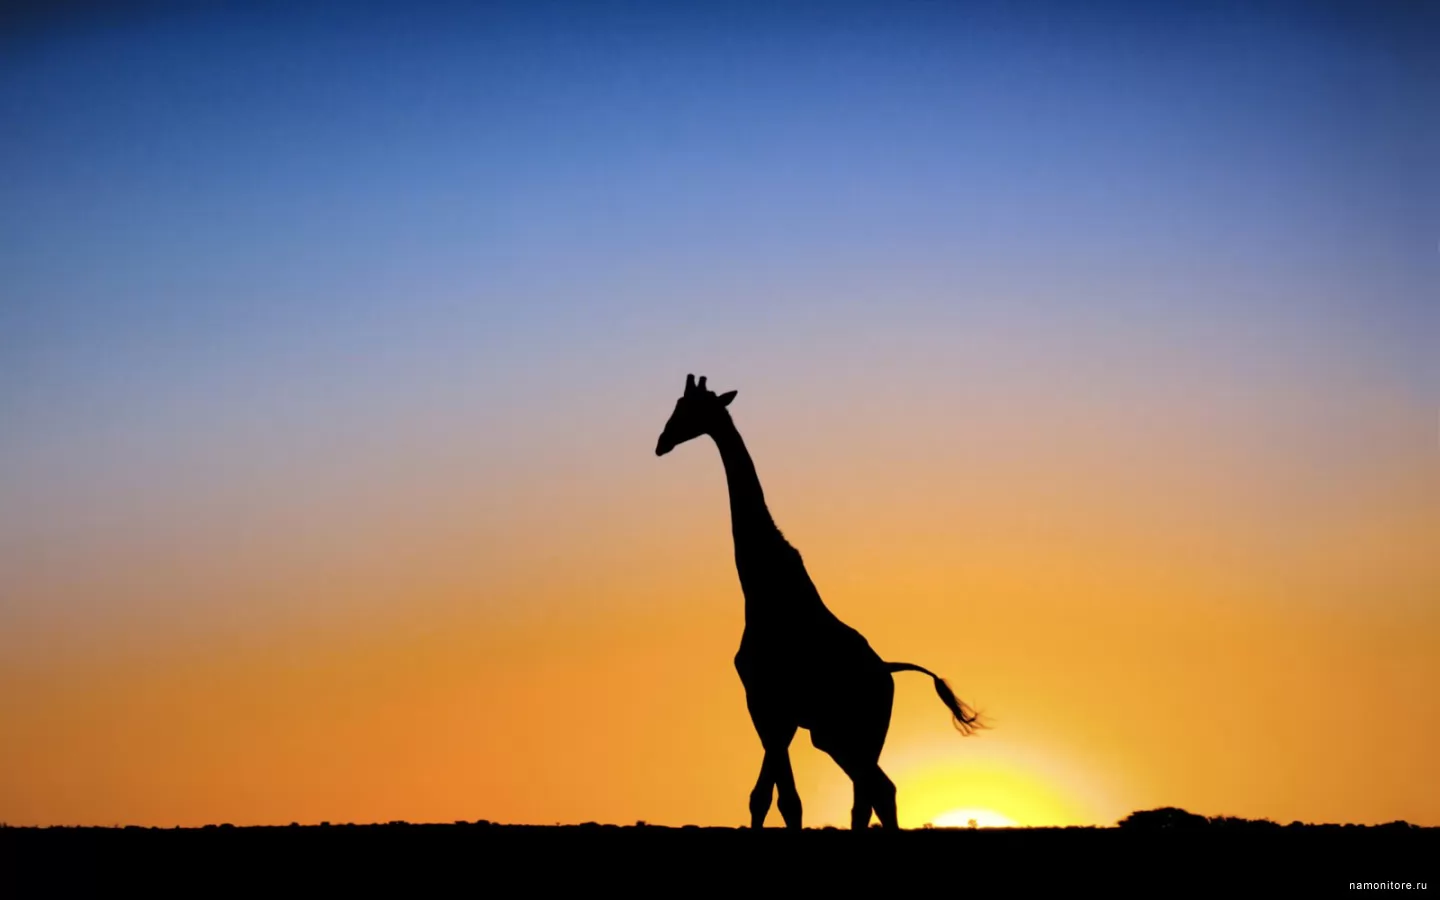 Giraffe against a sunset, Africa, animals, best, giraffes, sunsets x